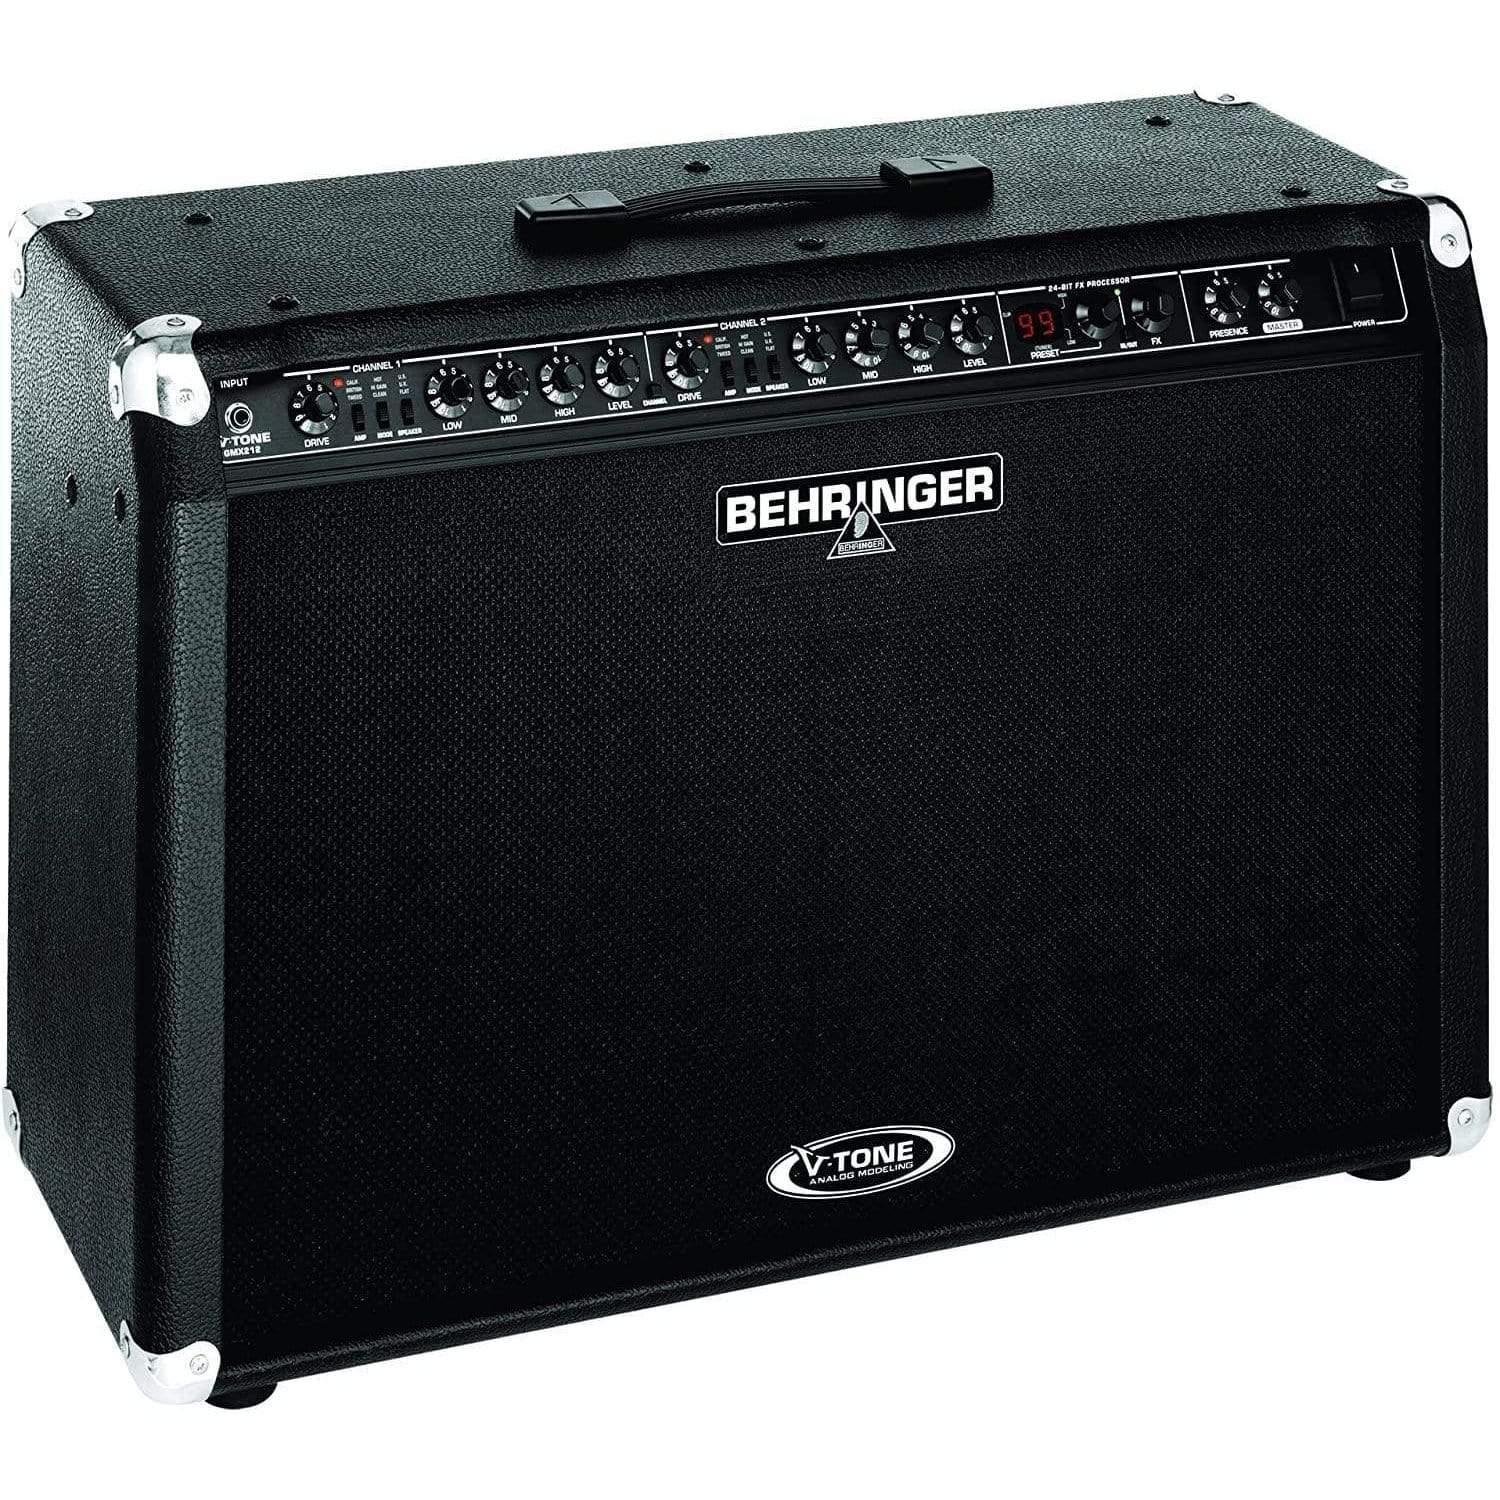 Behringer GMX212 V-Tone Combo Amplifier